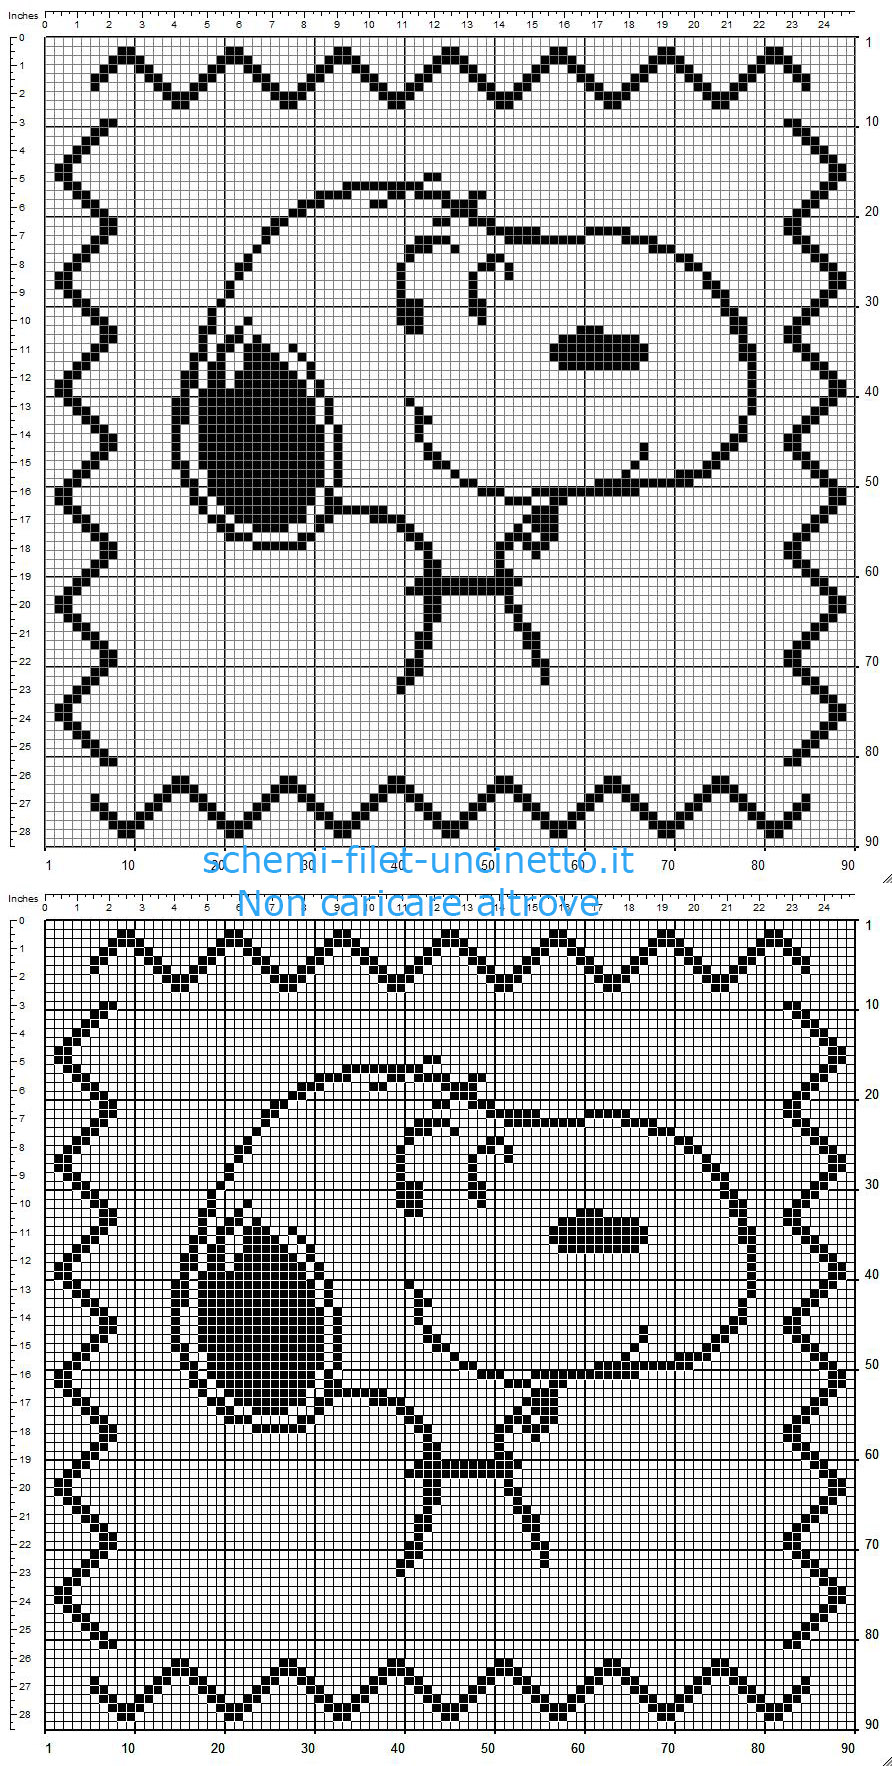 Cuscino bimbo a uncinetto filet con Snoopy personaggio cartoni animati schema gratis 90 x 90 quadretti